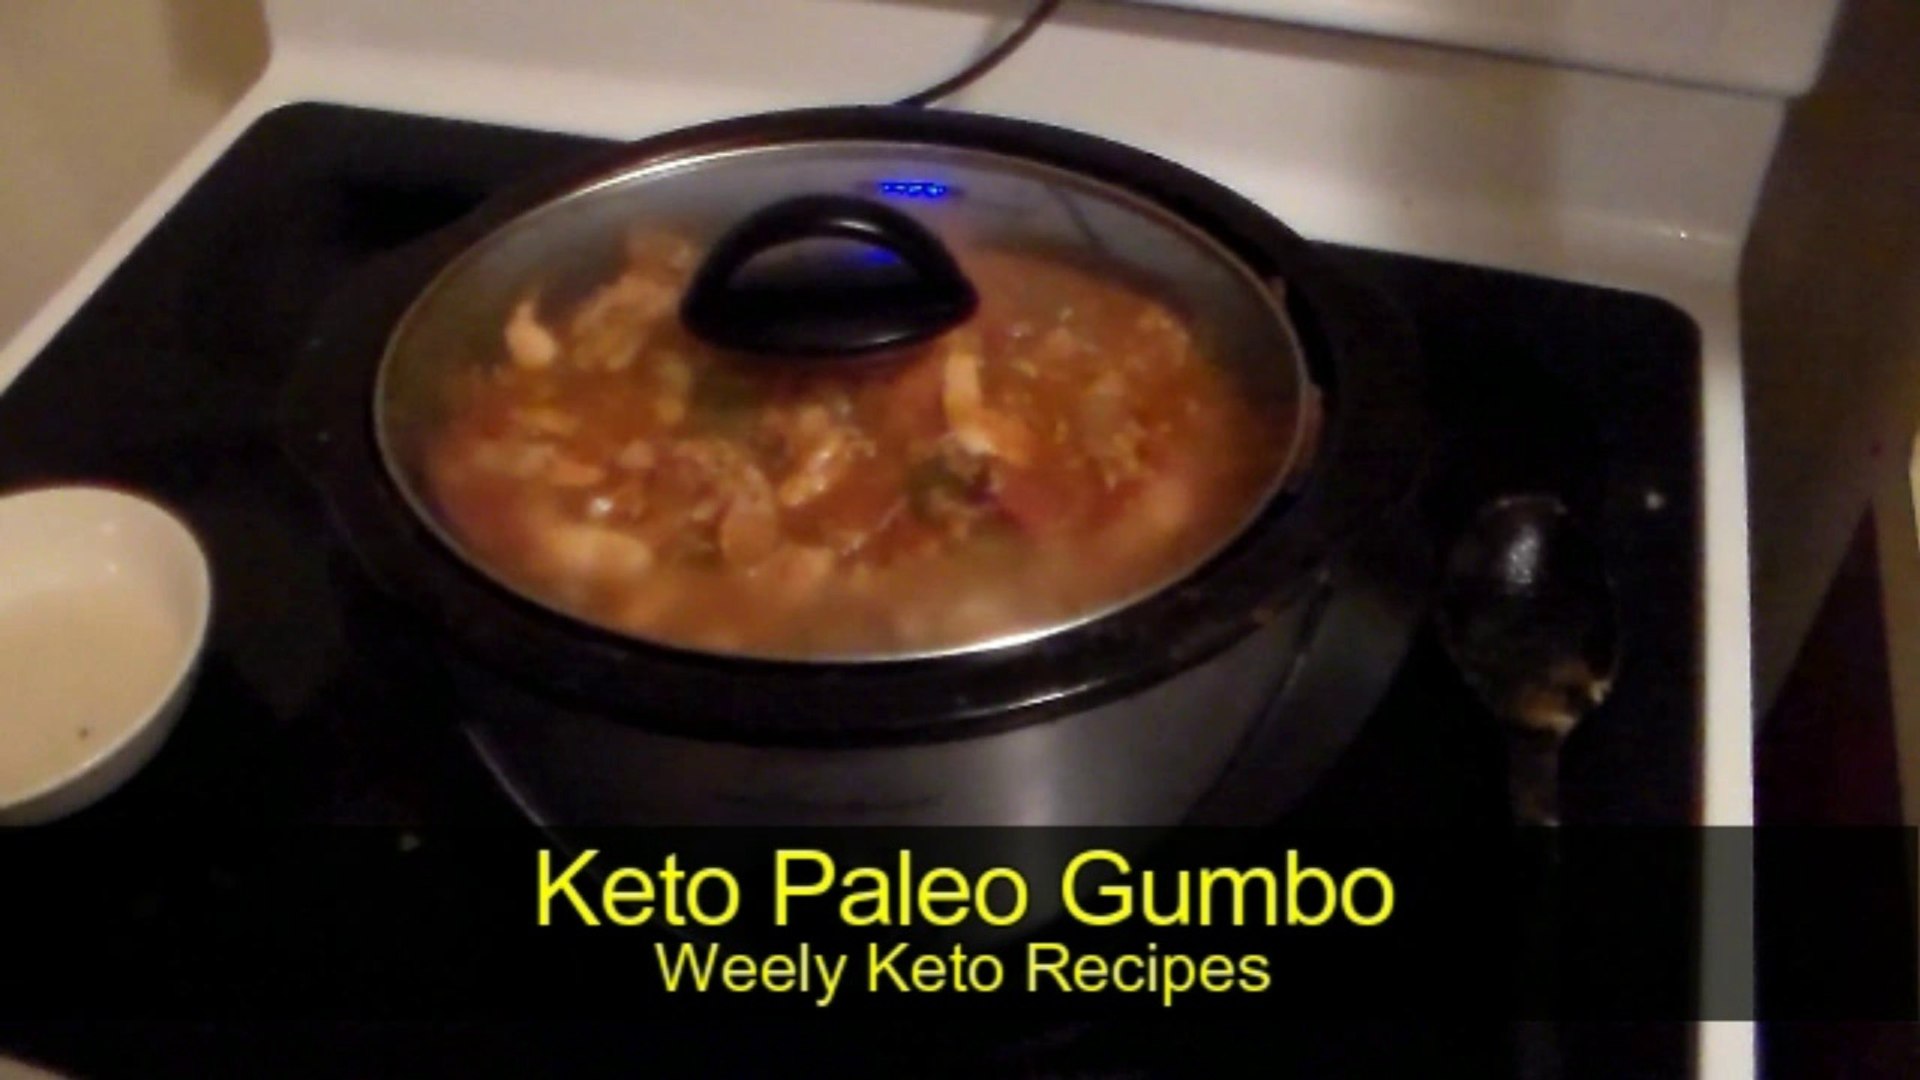 Keto Paleo Gumbo Weekly Keto Recipes